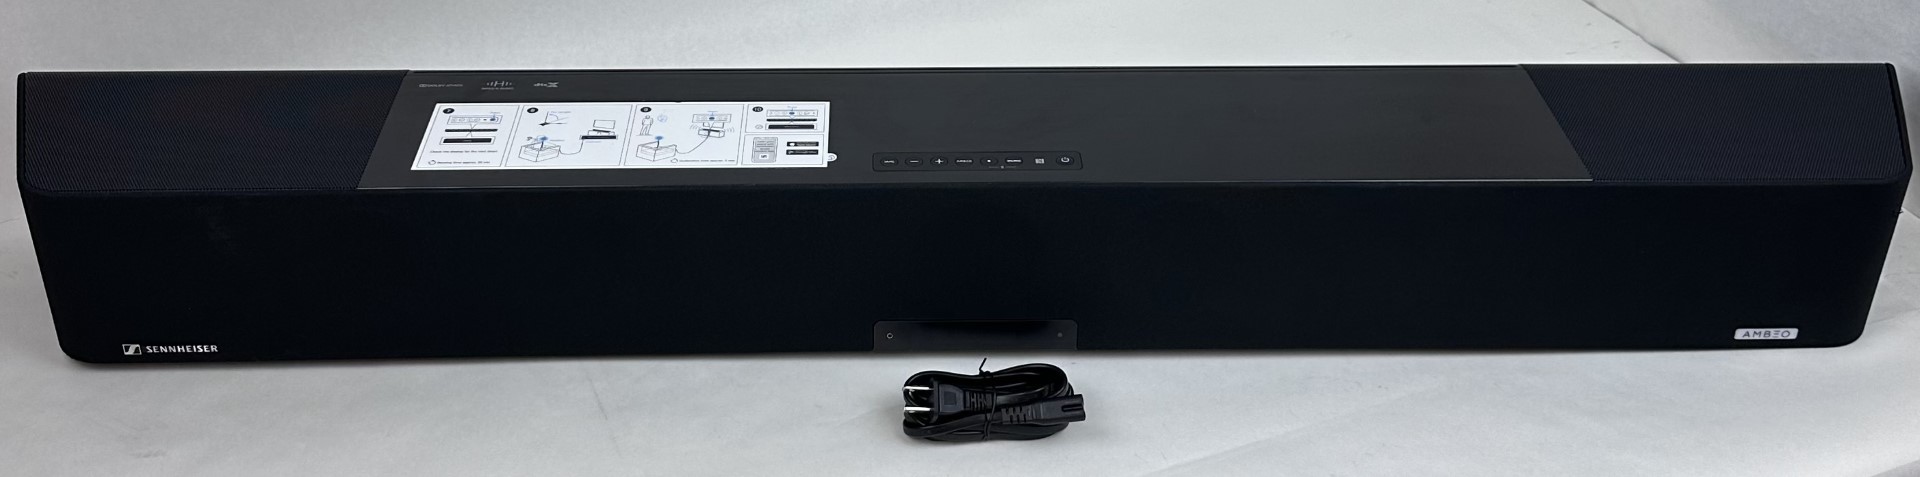 Sennheiser AMBEO MAX 5.1.4 Channel with Dolby Atmos Soundbar SB01 - 0332035625